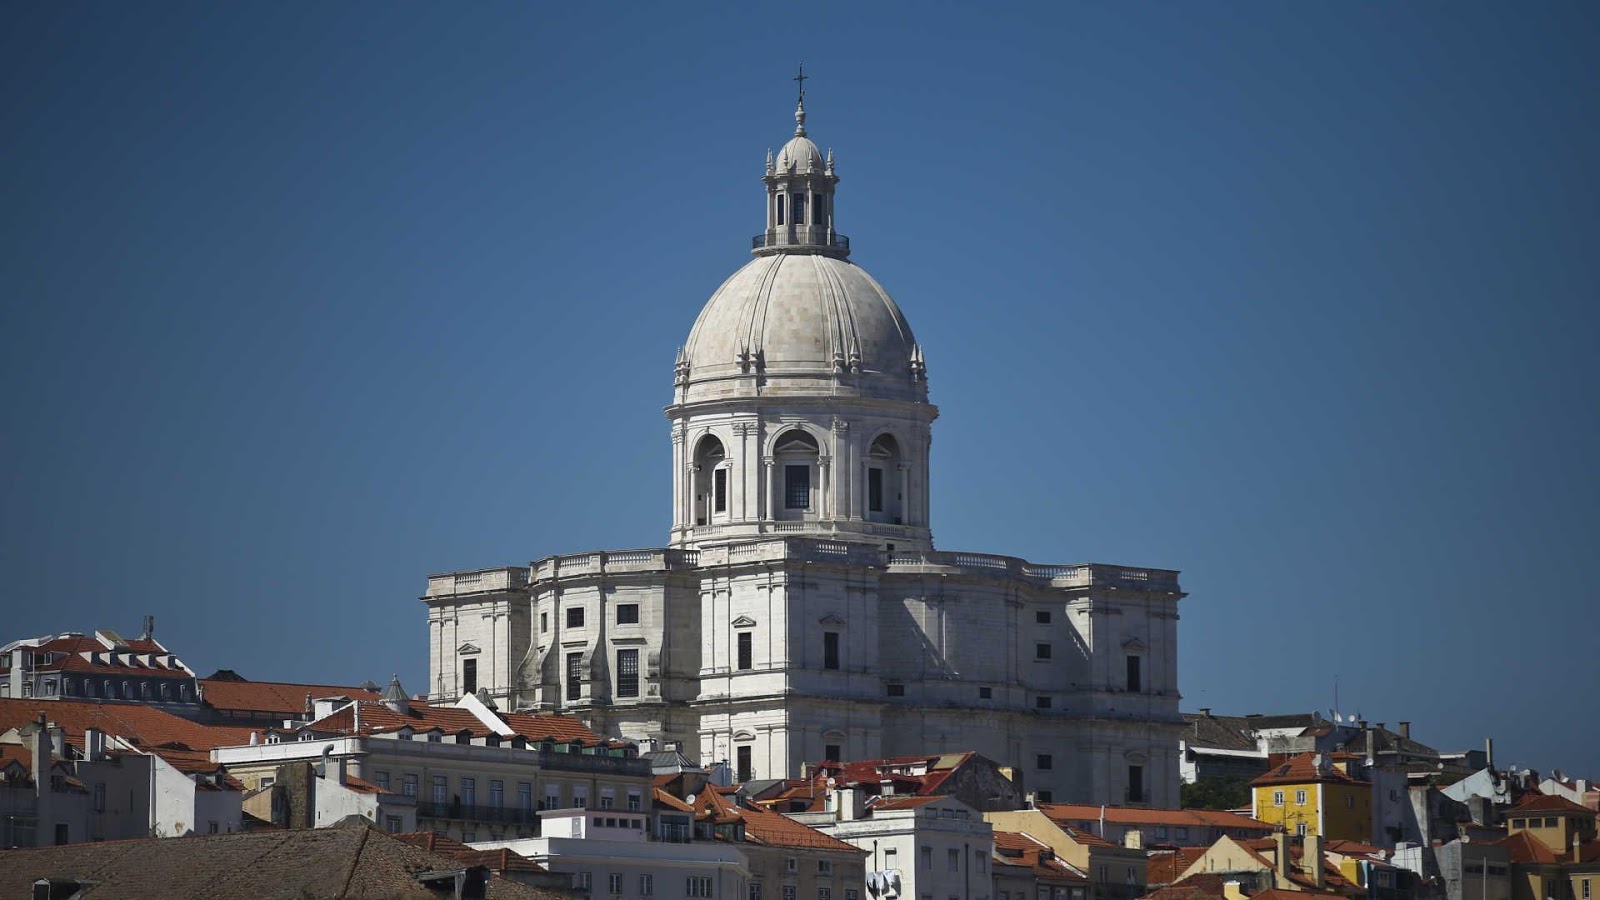 De longe é possível ver o imponente Panteão Nacional de Lisboa